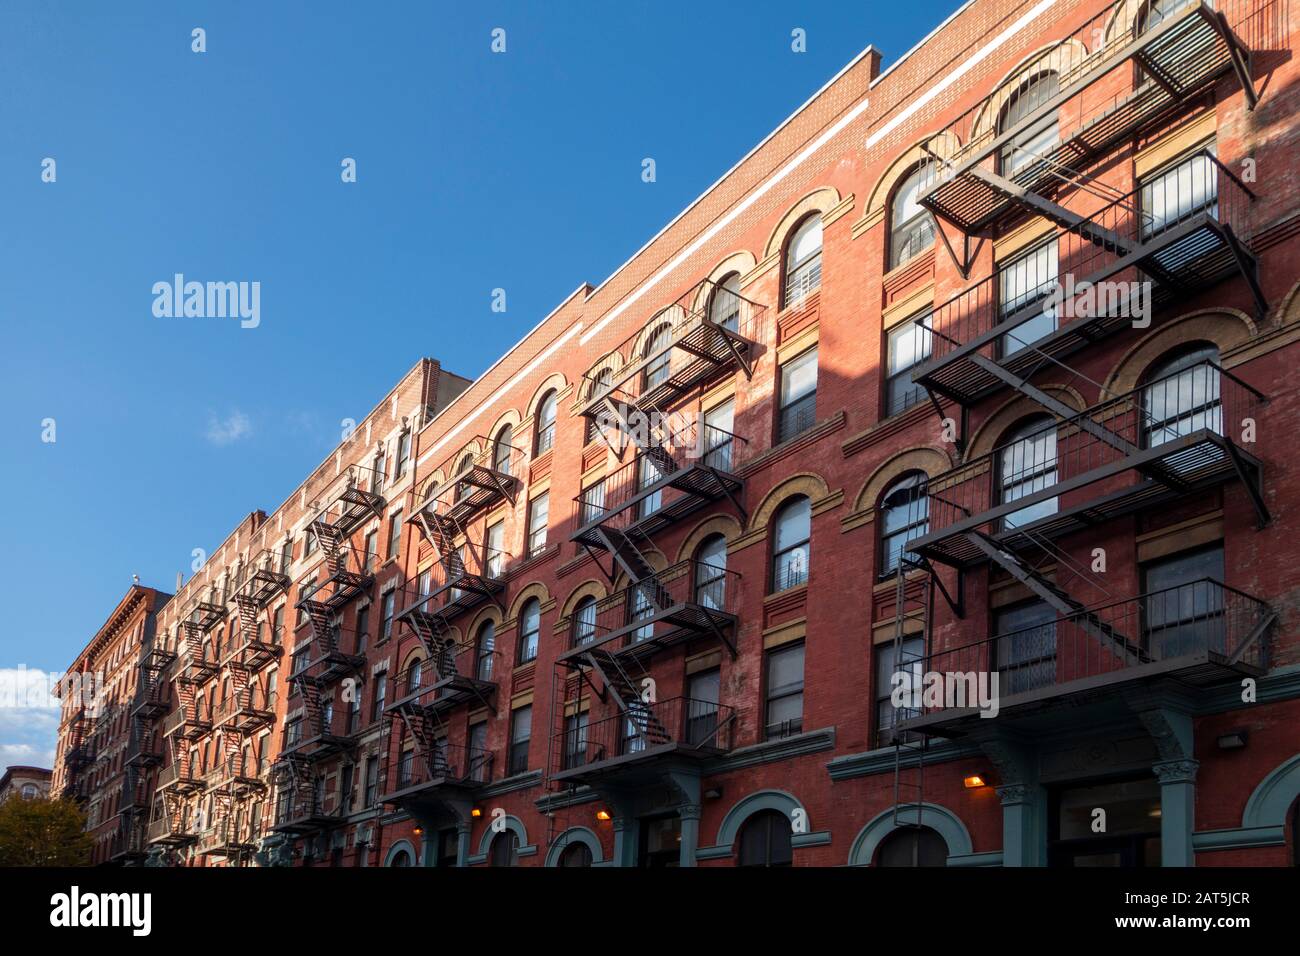 New york City manhattan Street mit klassischen Ziegelbäuern und Feuerkapeln Stockfoto